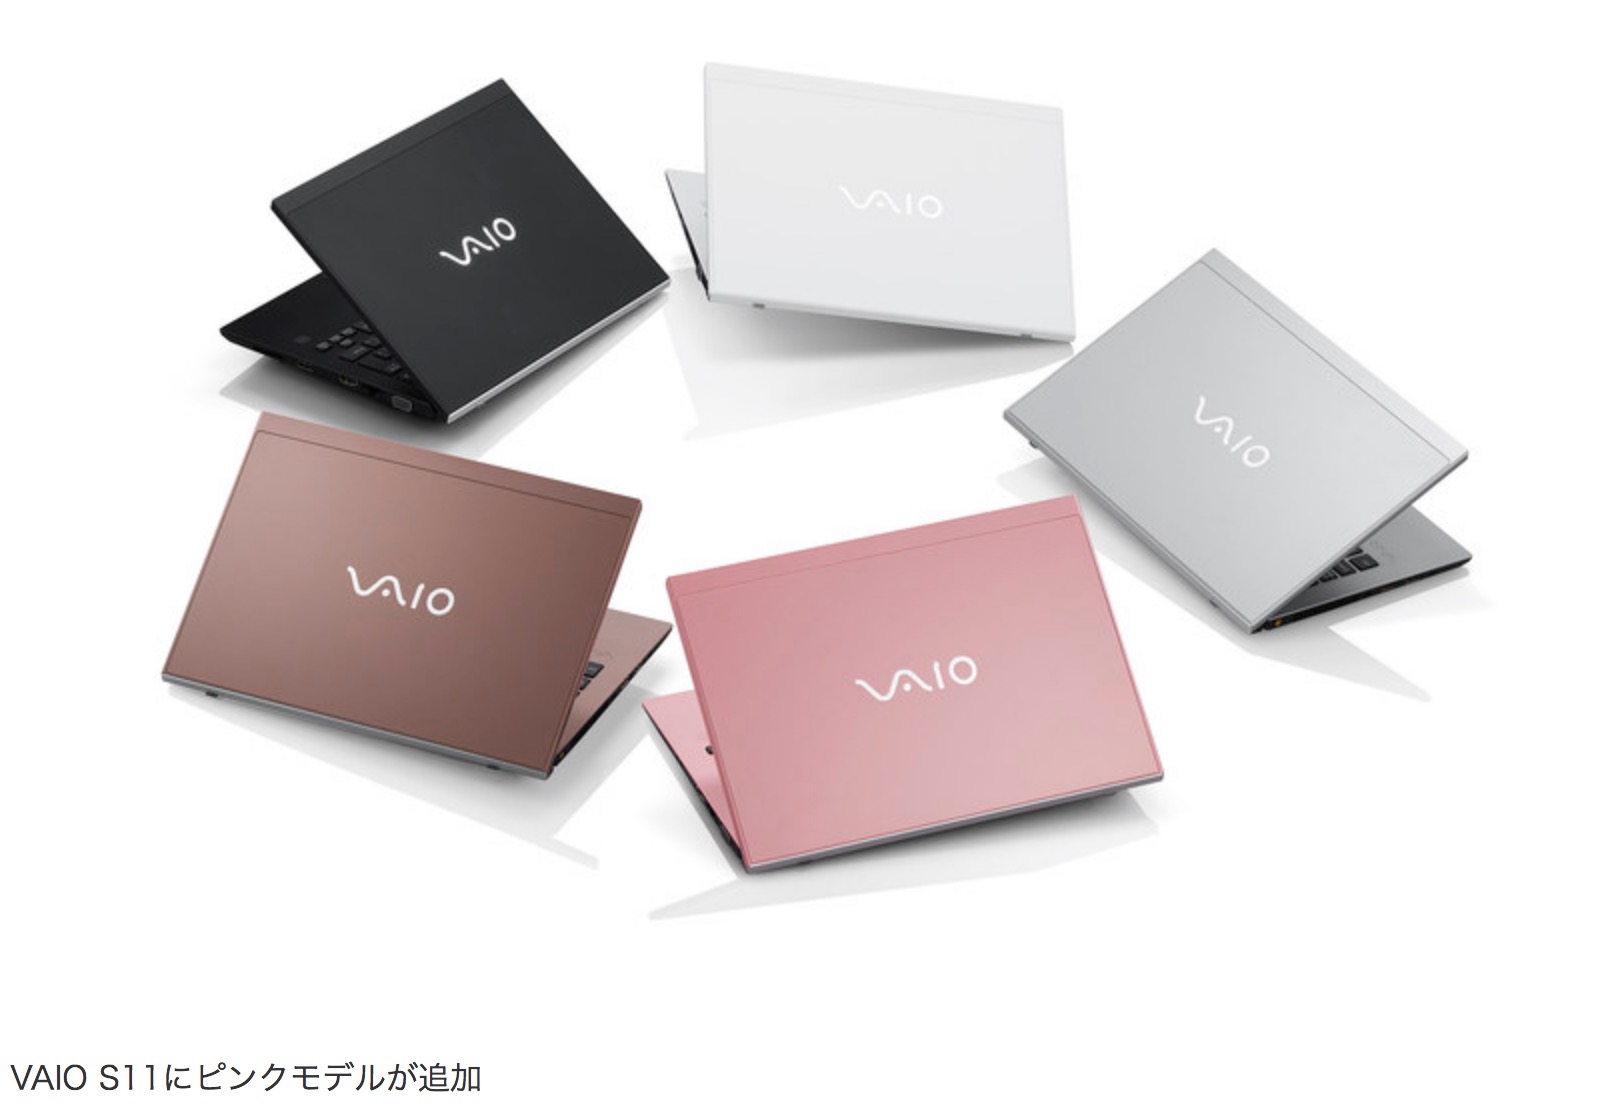 Thương hiệu laptop
VAIO sắp
trở lại với sức mạnh từ vi xử lý Intel Core thế hệ 8, giá từ
30 triệu